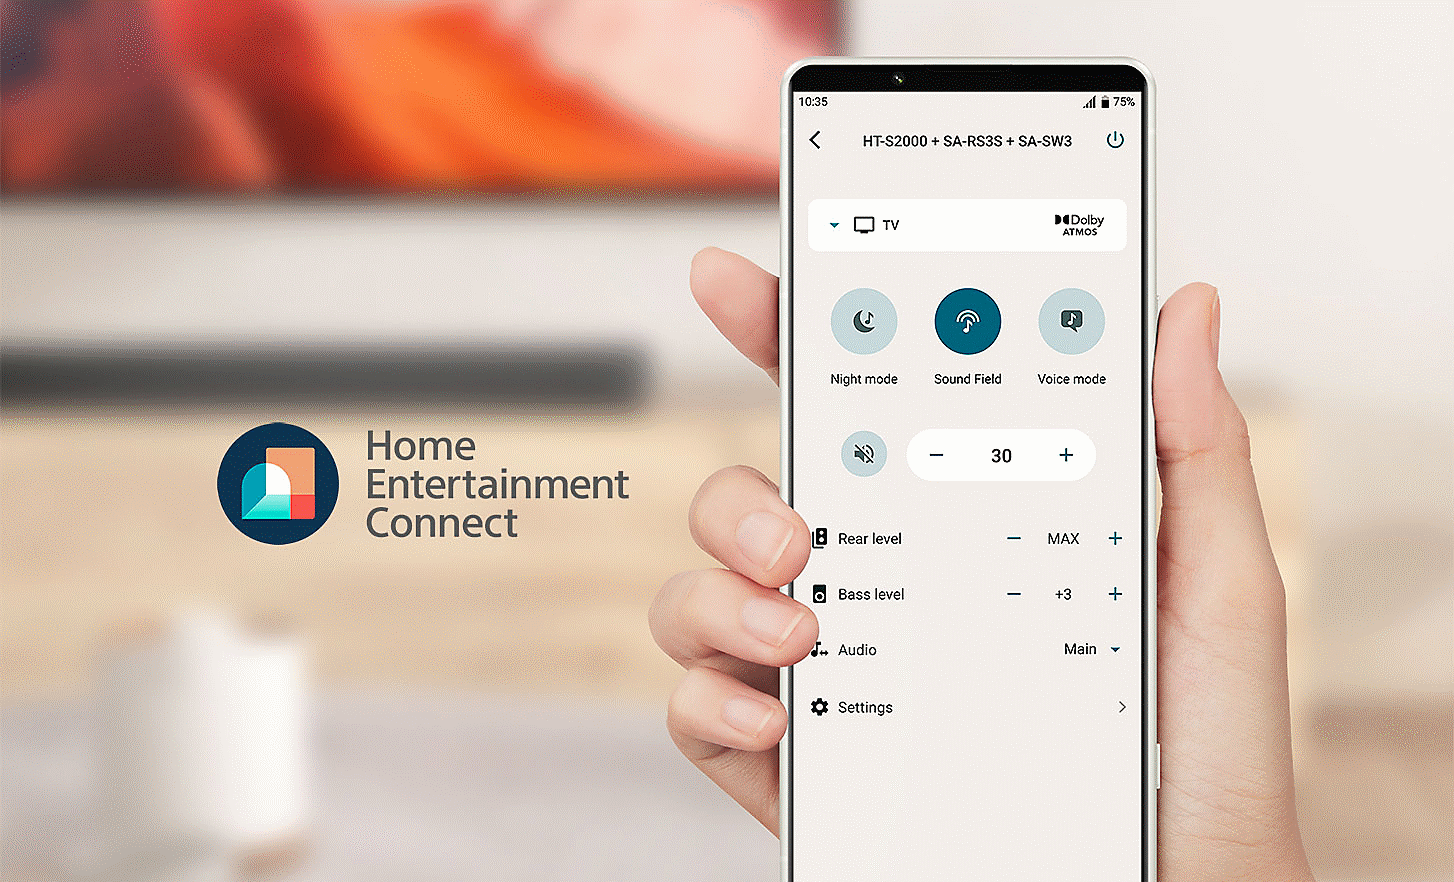 Bilde av en hånd som holder en mobiltelefon med en innstillingsmeny på skjermen og en Home Entertainment Connect-logo til venstre